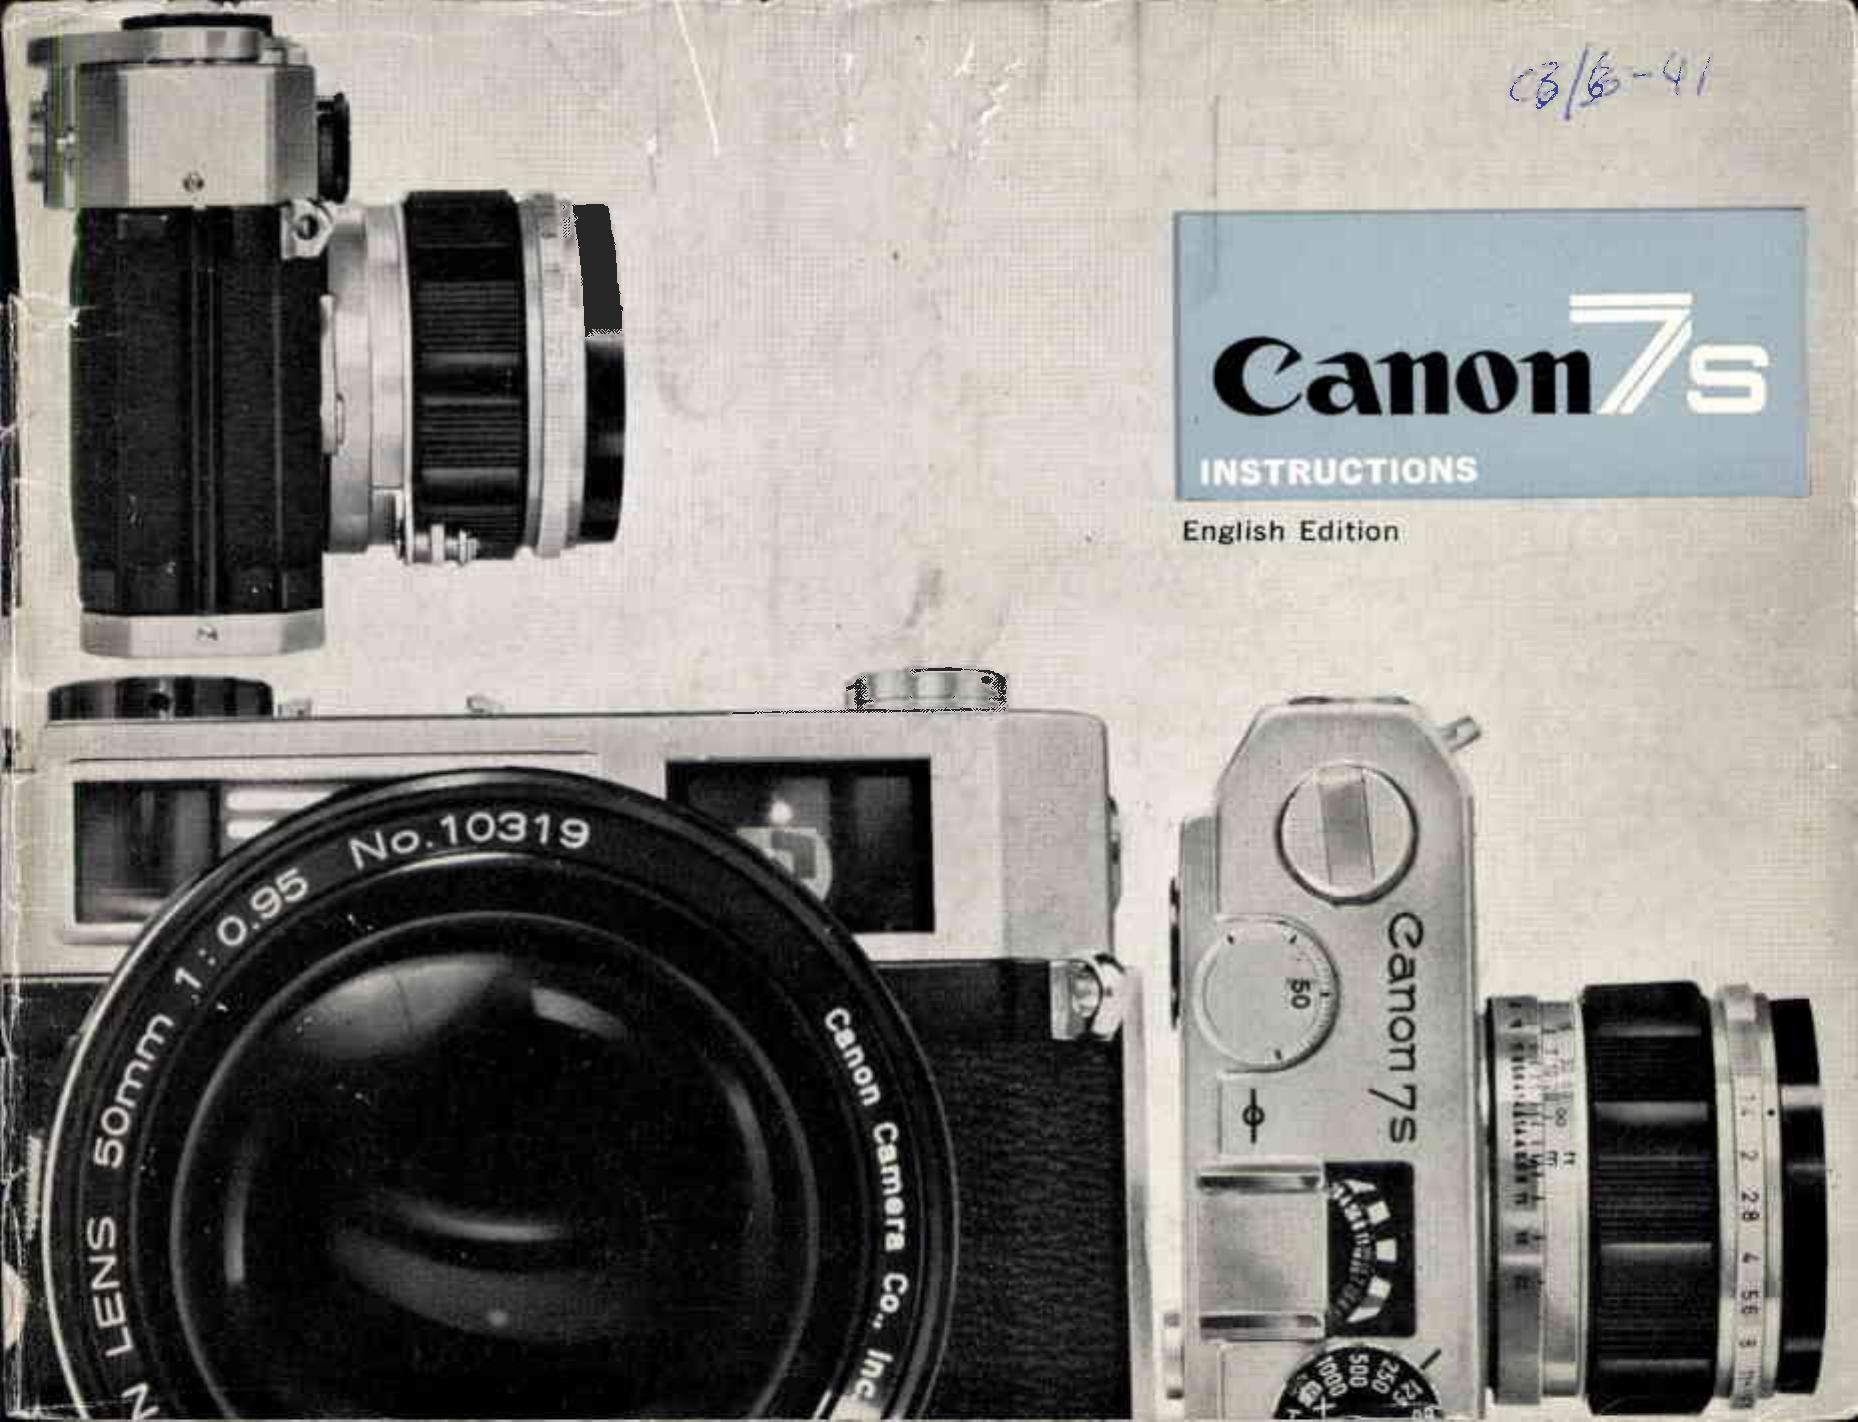 Canon 7S Film Camera User Manual